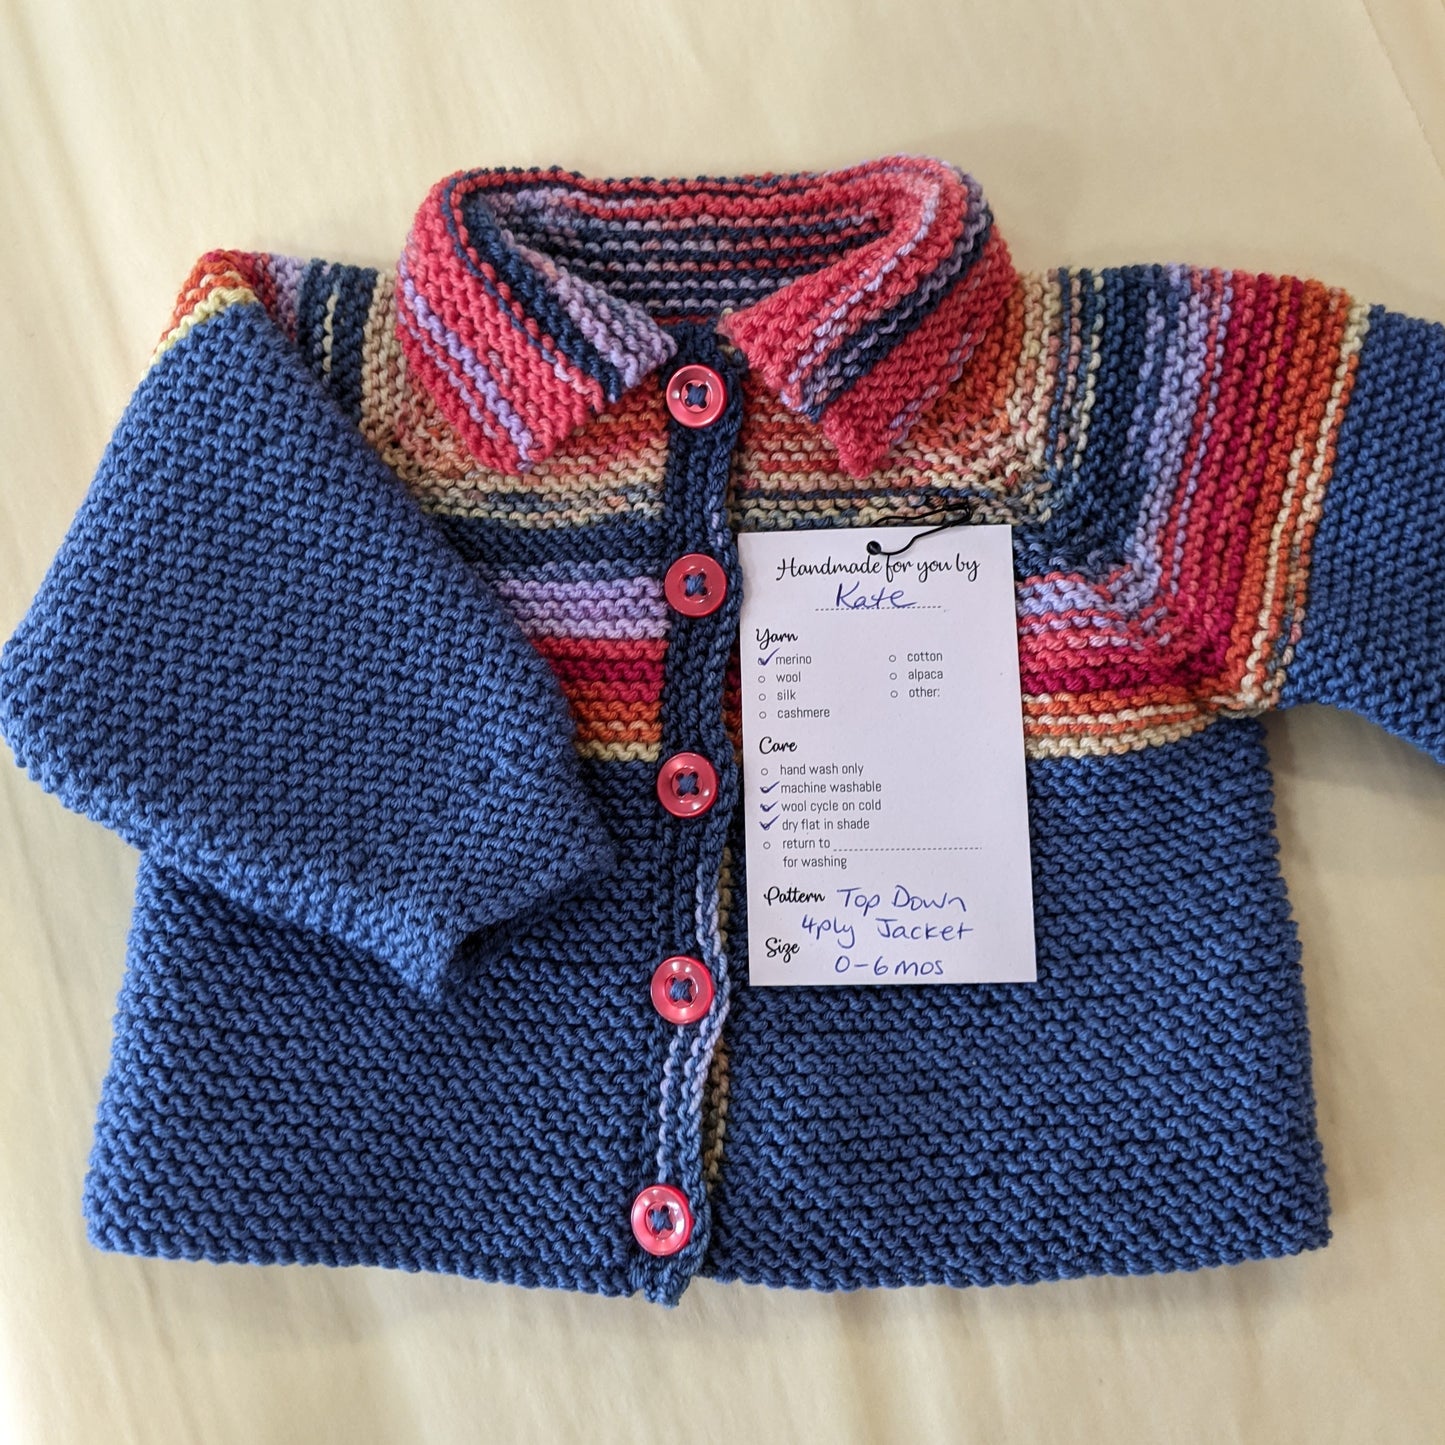 Wool Baa Yarn Care Gift Tags